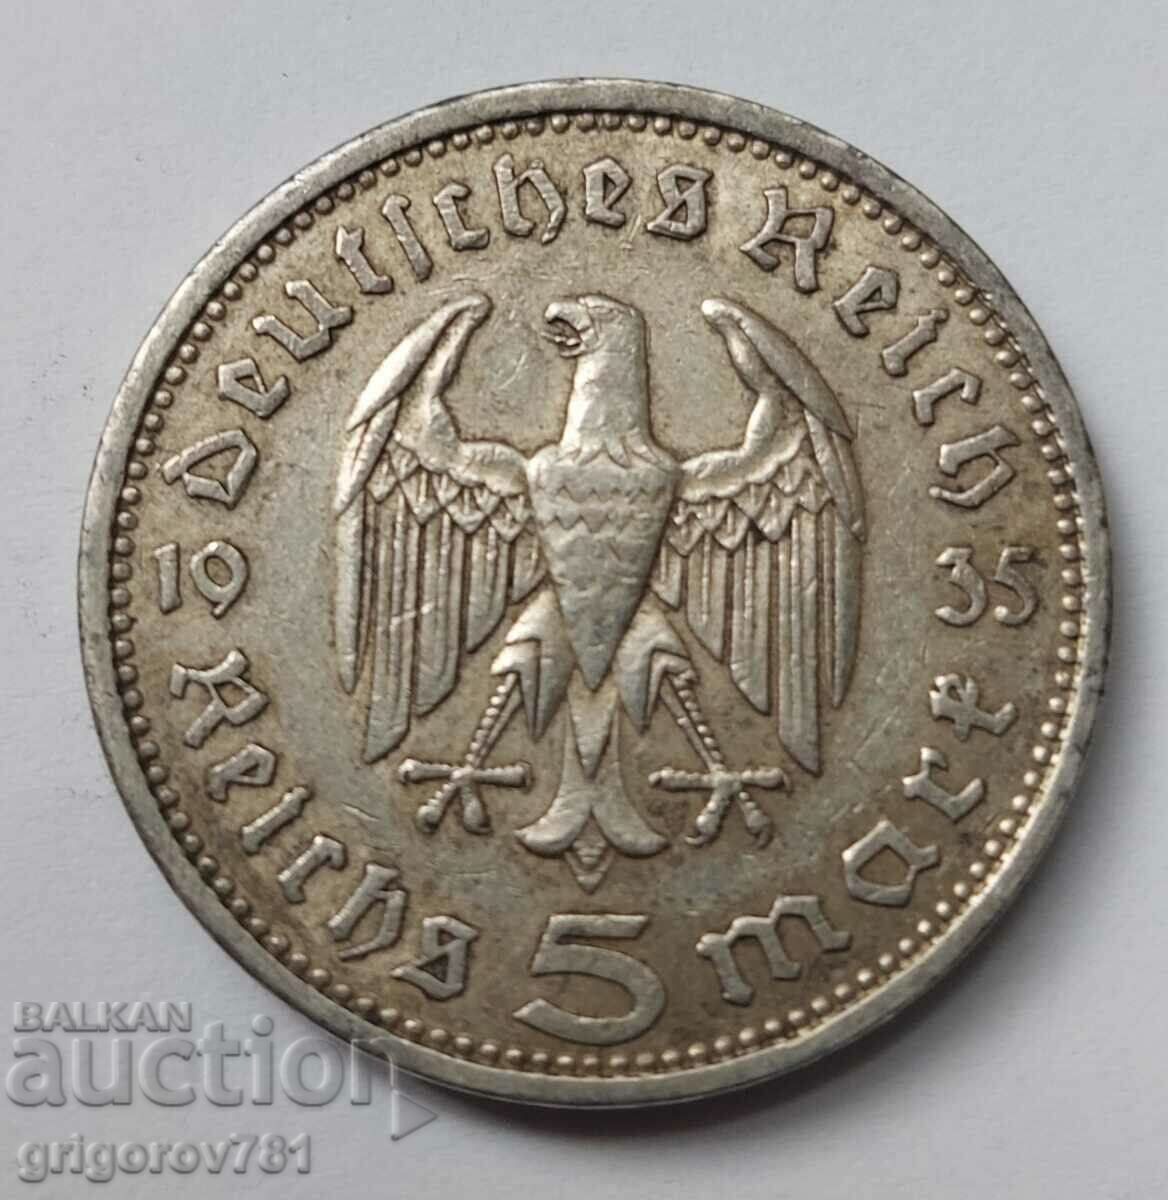 5 mărci de argint Germania 1935 A III Reich Moneda de argint #34